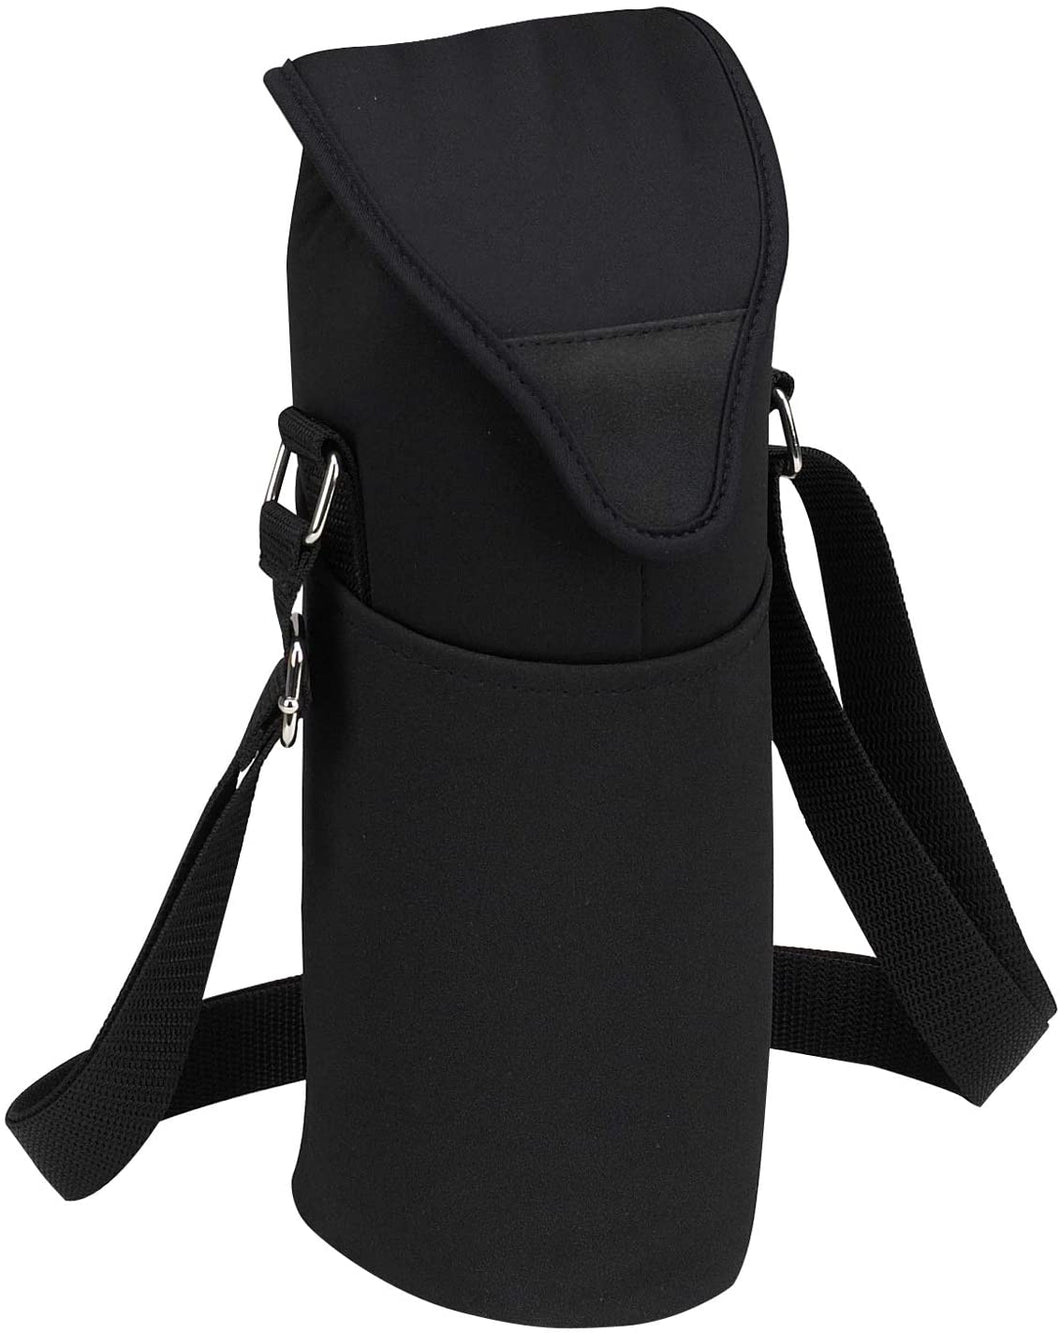 (D) Single Bottle Cooler Tote, Picnic Backpack Bag for Outdoor (Black)